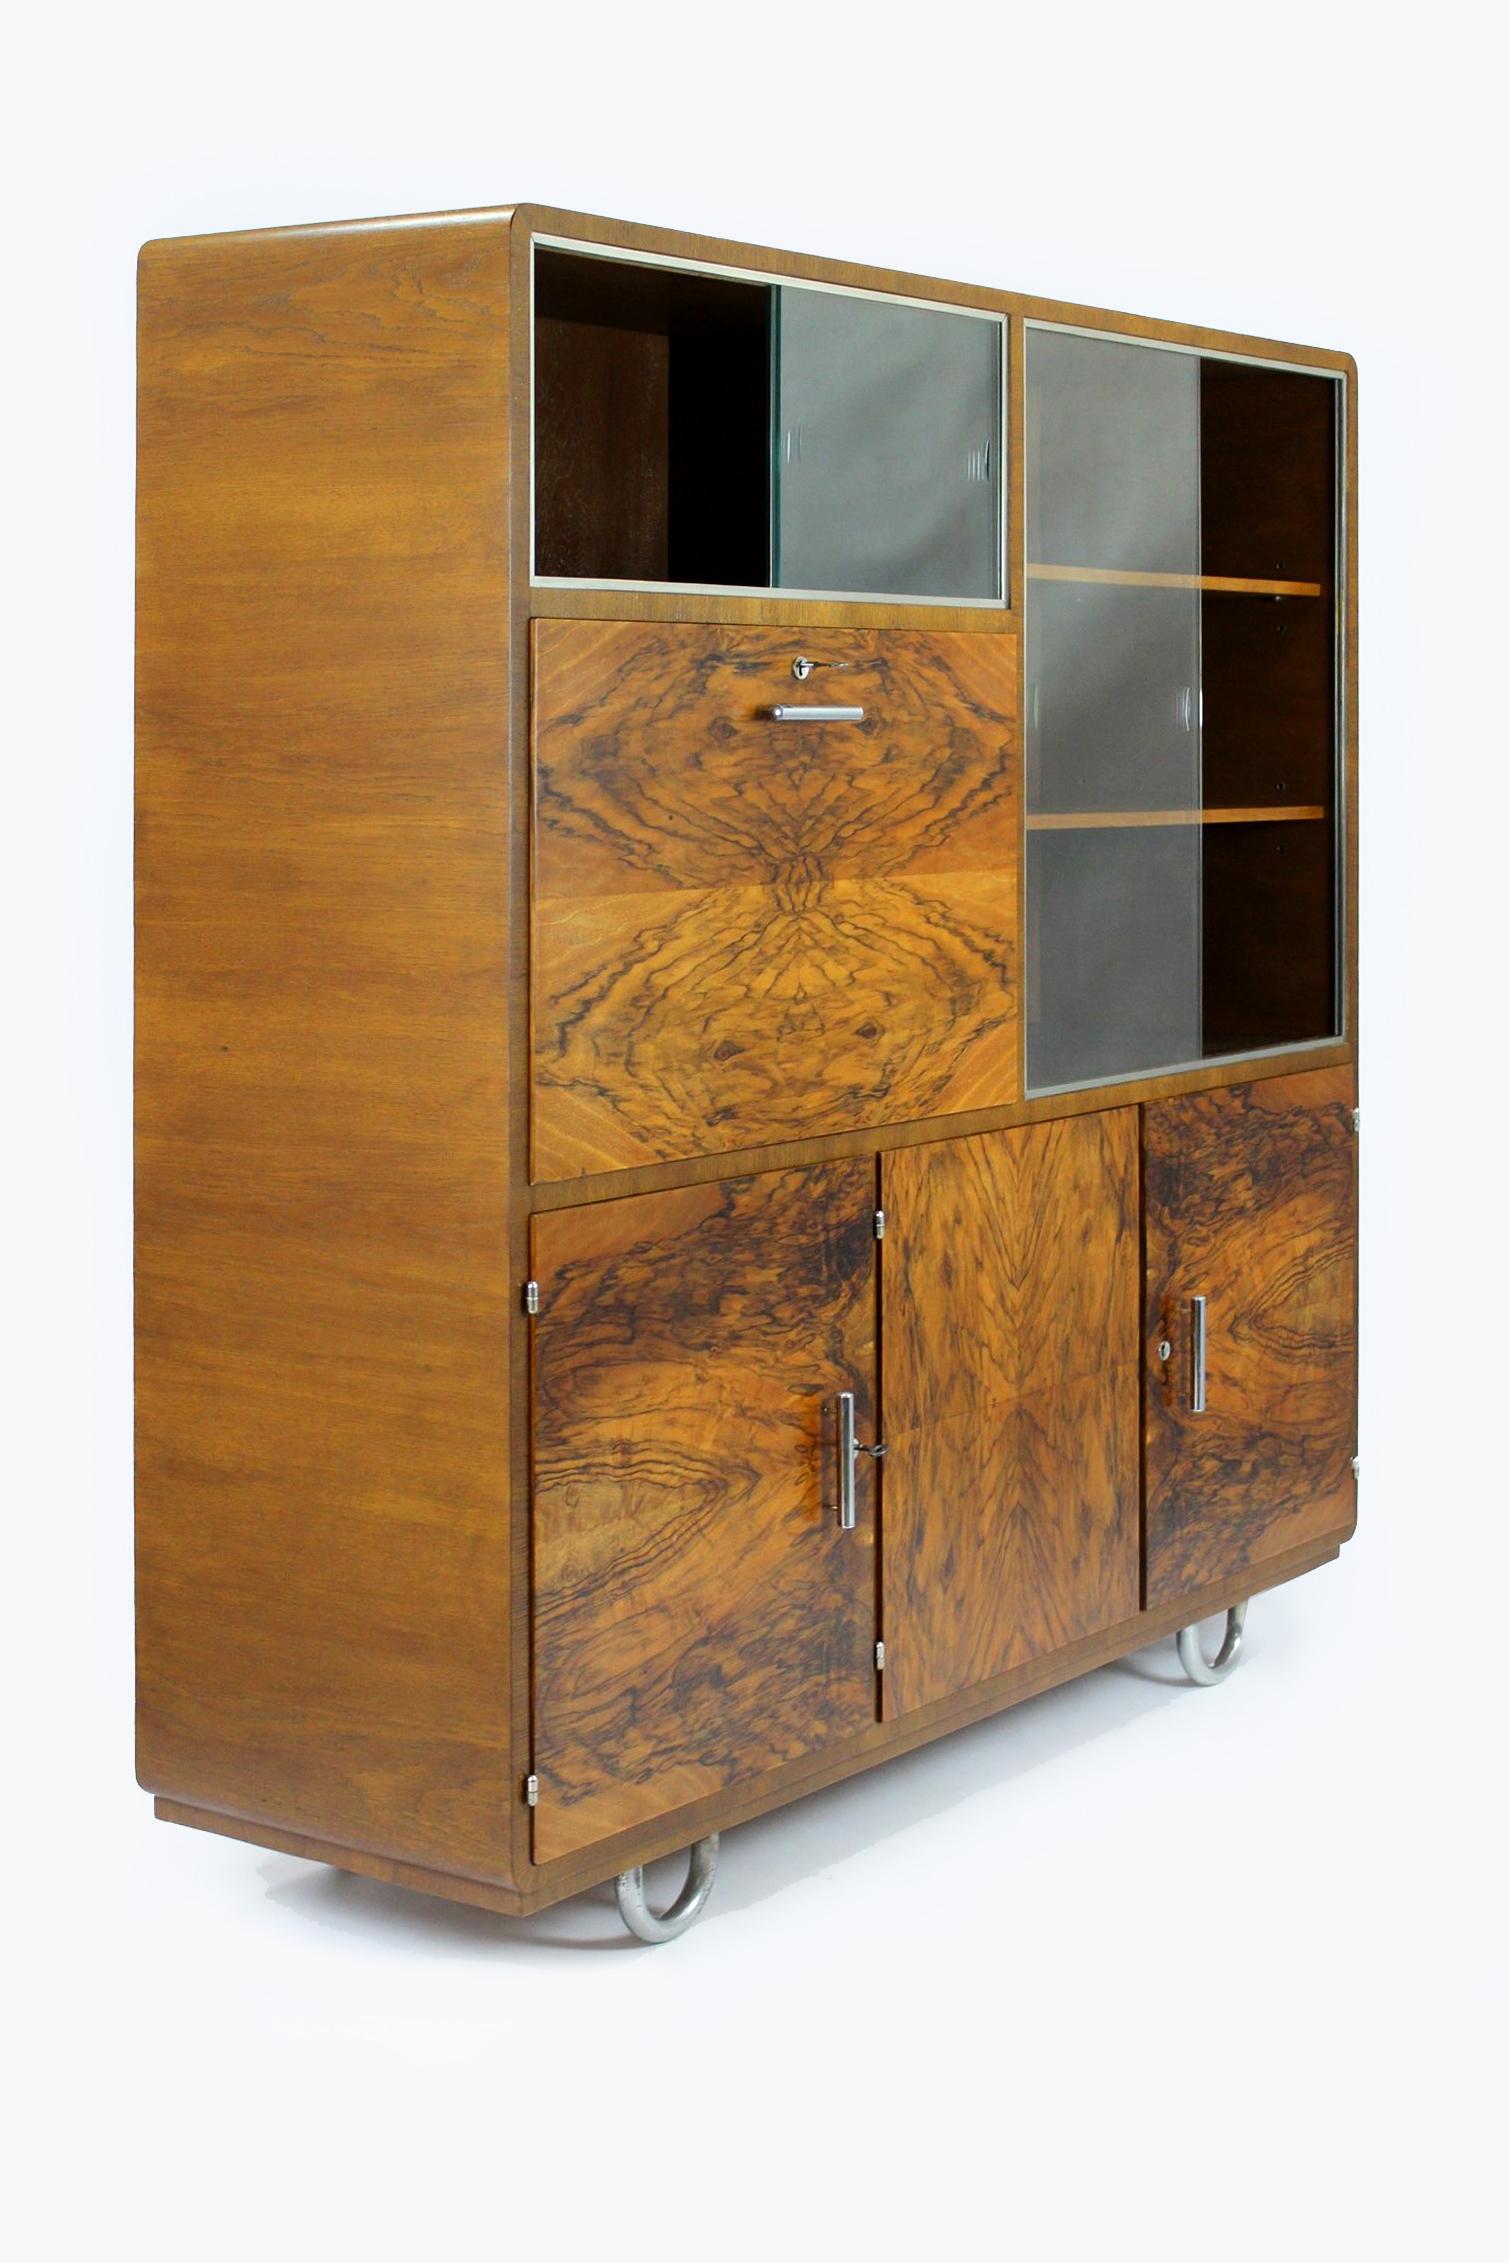 
Cette armoire de style Bauhaus en chêne et en noyer a été produite dans les années 1930 par Robert Slezak. L'armoire est multifonctionnelle, divisée en 5 parties. Il y a 4 tiroirs, 3 étagères, 2 vitrines avec verre coulissant (le verre est